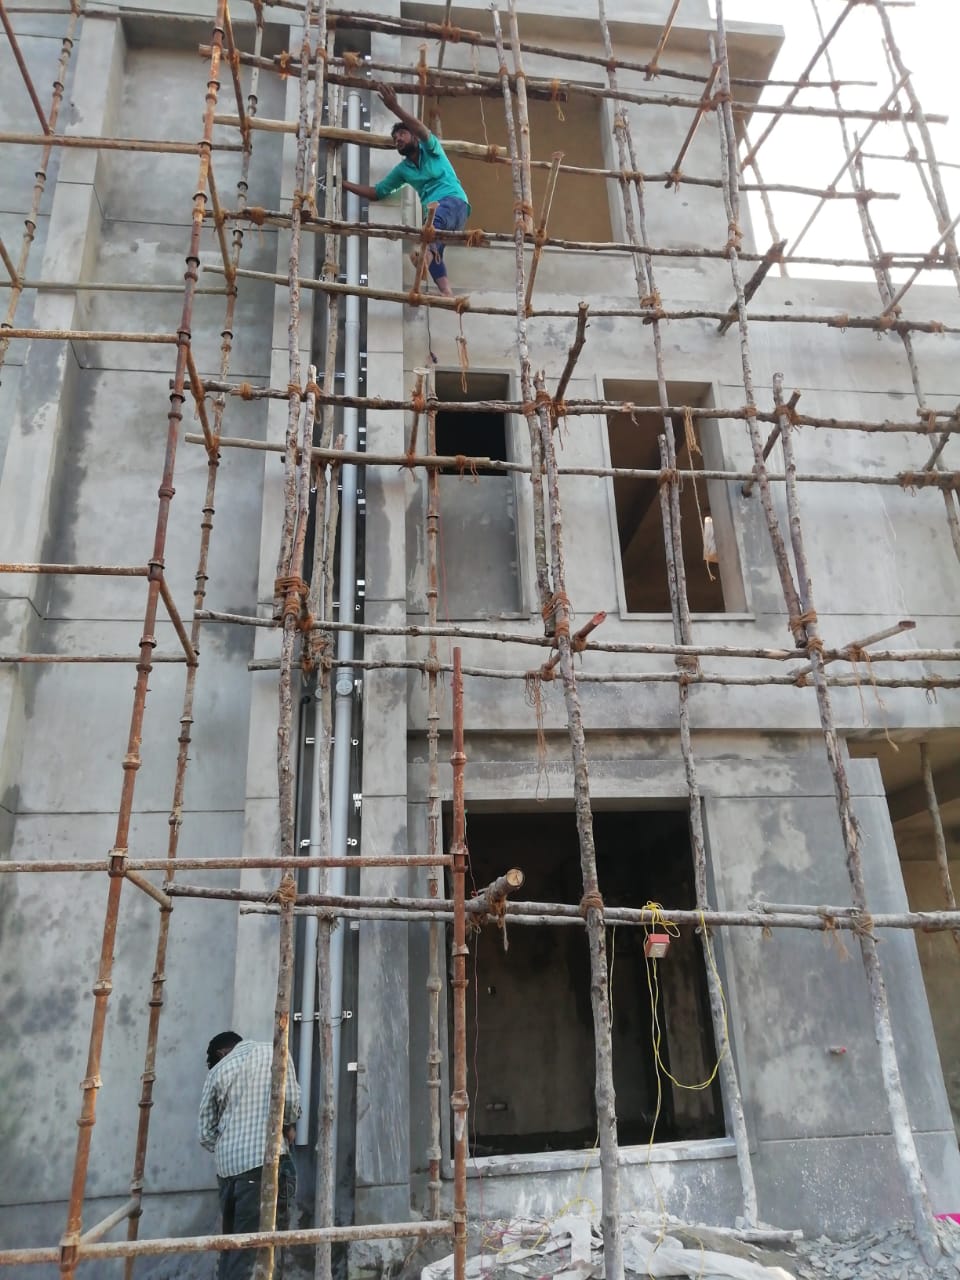 External plumbing contractor in Hyderabad | NEEDS RESOURCES | External plumbing contractor in Hyderabad, Best external & internal plumbing contractor in Hyderabad, Experts plumbing contractor in Hyderabad, Plumbing contractor in Hyderabad,    - GL104969